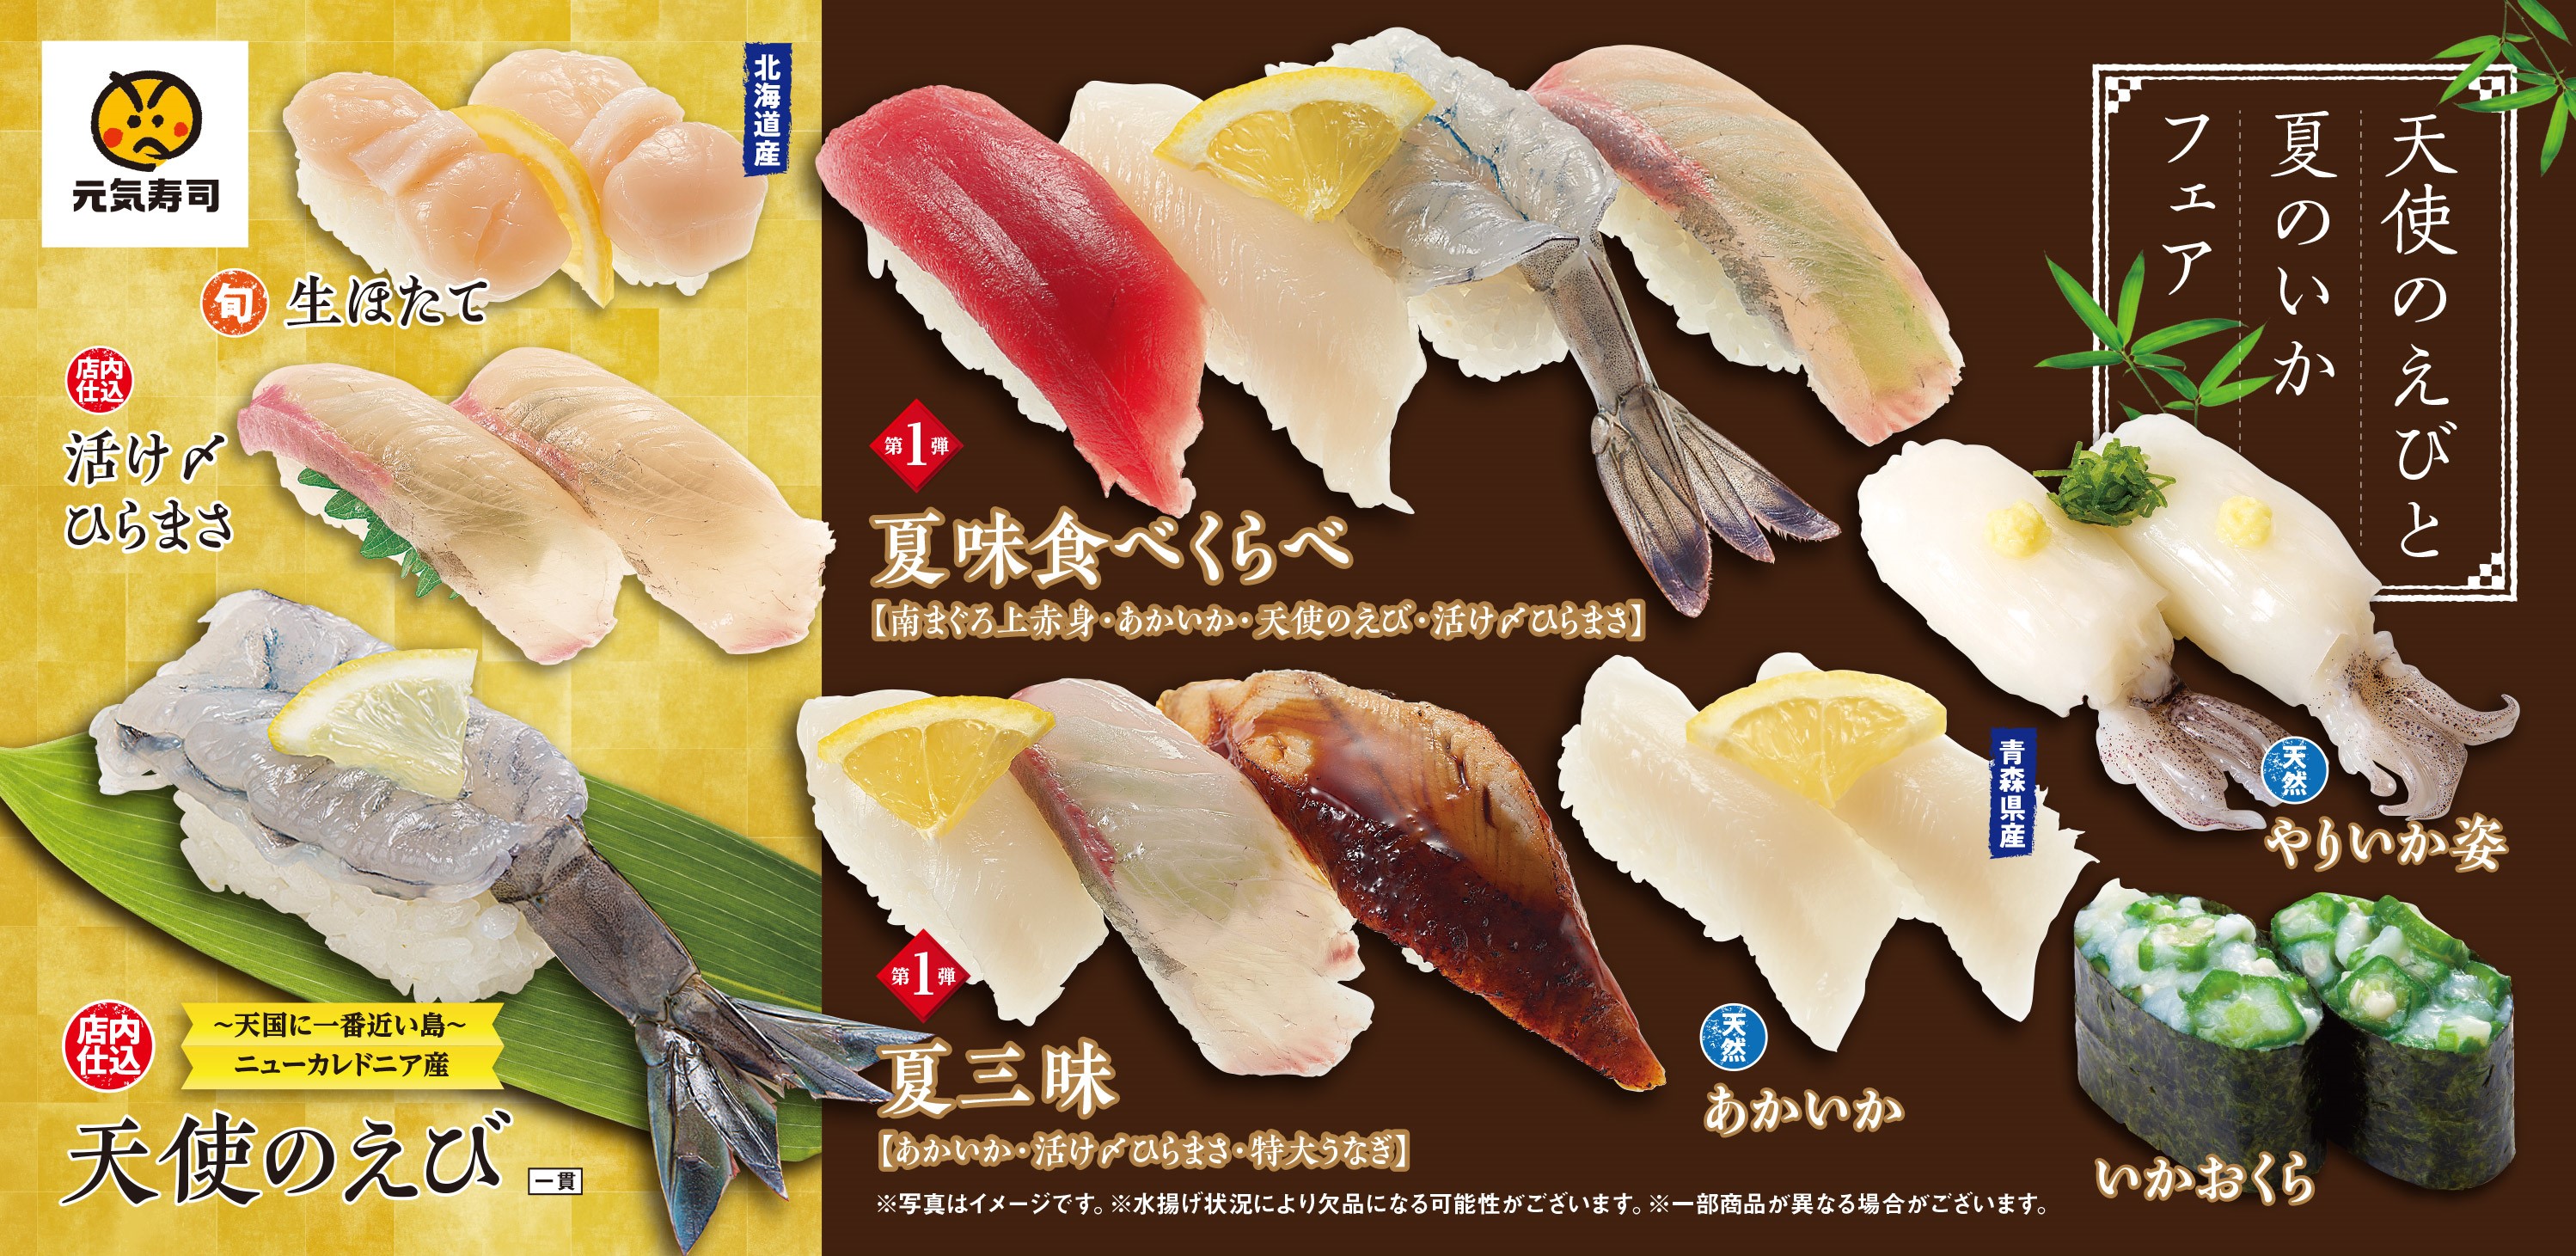 元気寿司 天使のえびと夏のいかフェア 実施中 6月4日 火 より 魚べい 元気寿司グループ